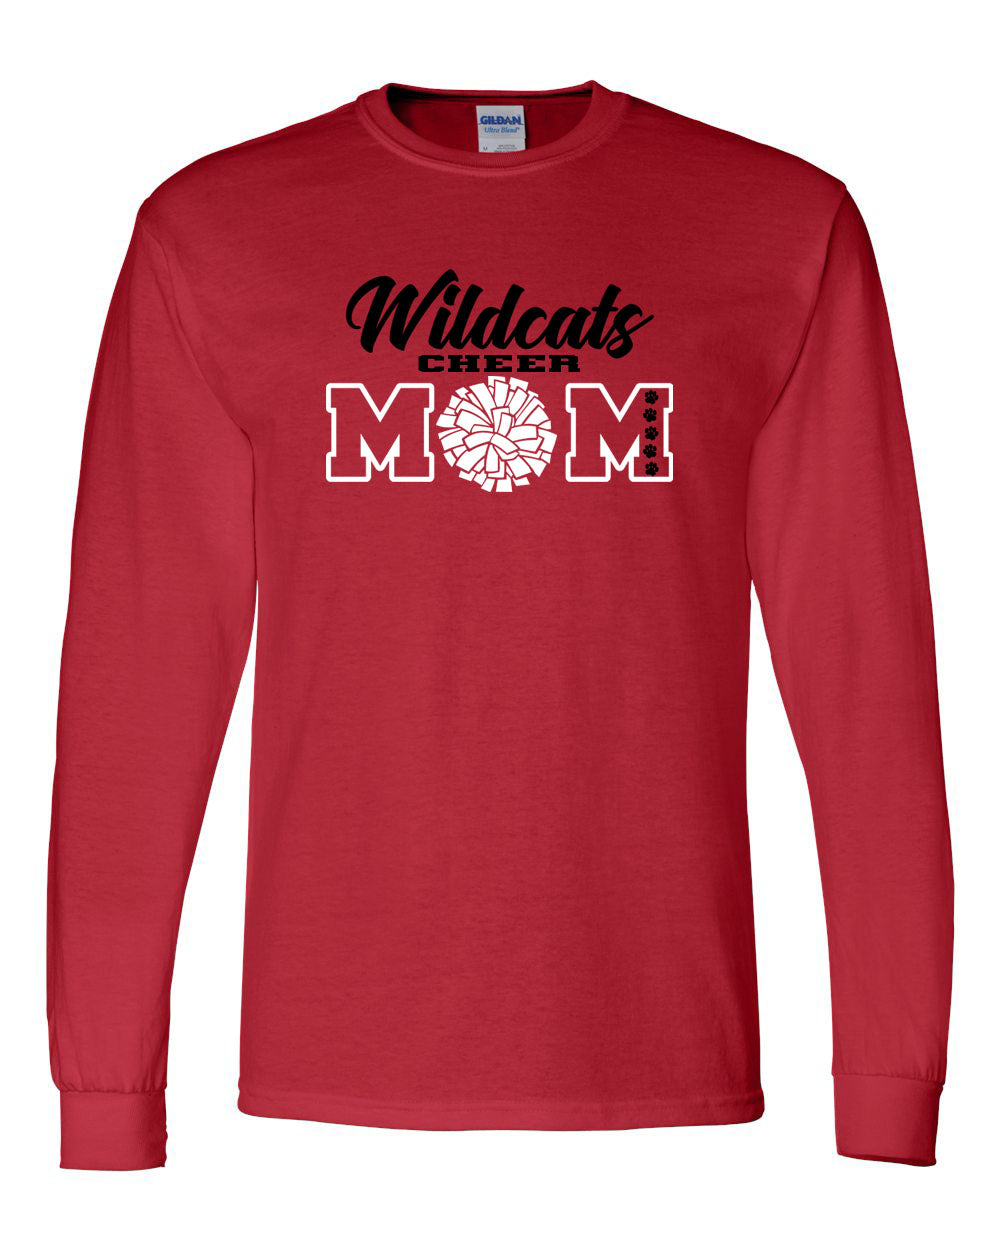 Wildcats Cheer Design 7 Long Sleeve Shirt